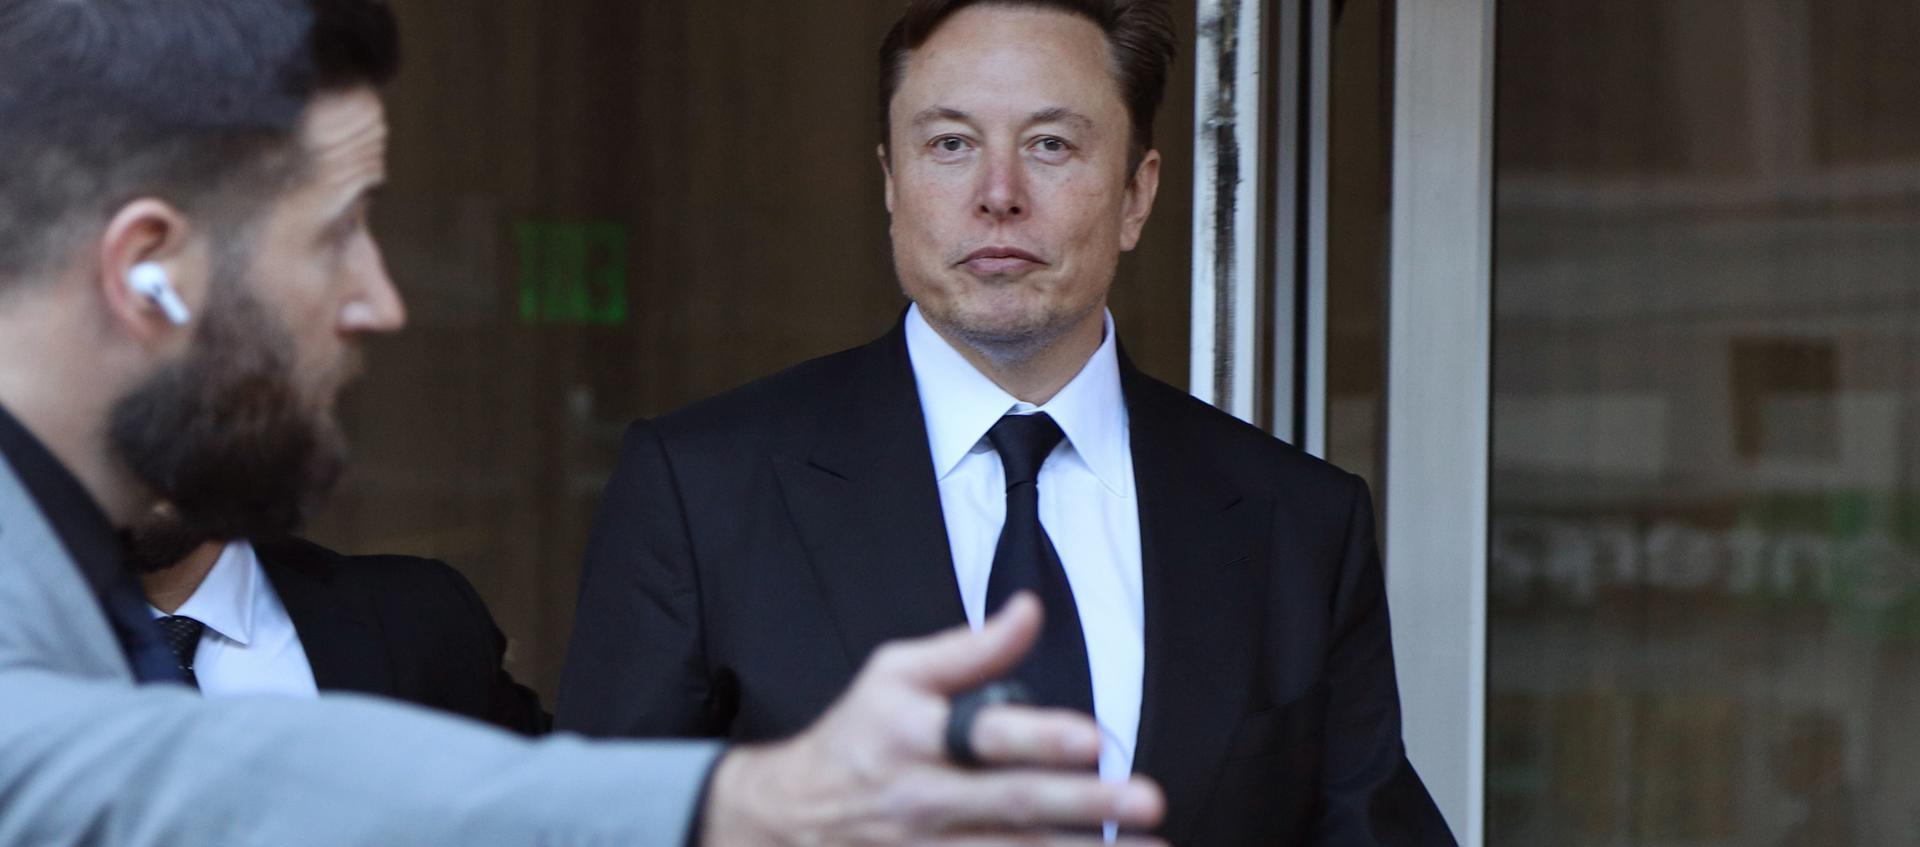 El magnate Elon Musk, propietario de empresas como Twitter, Tesla o SpaceX